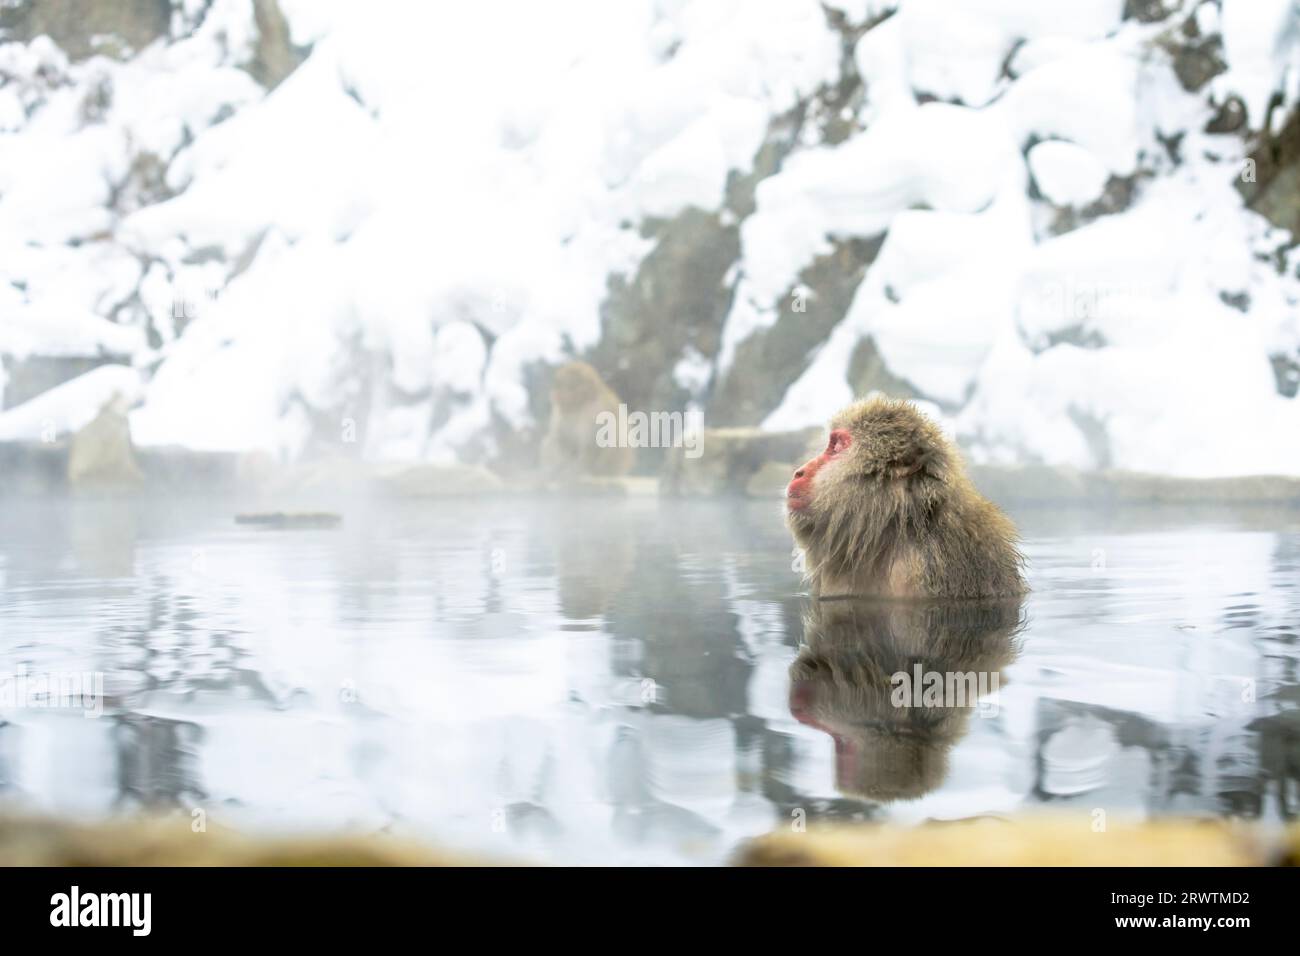 Une femelle macaque japonaise prenant un bain relaxant dans une source chaude Banque D'Images